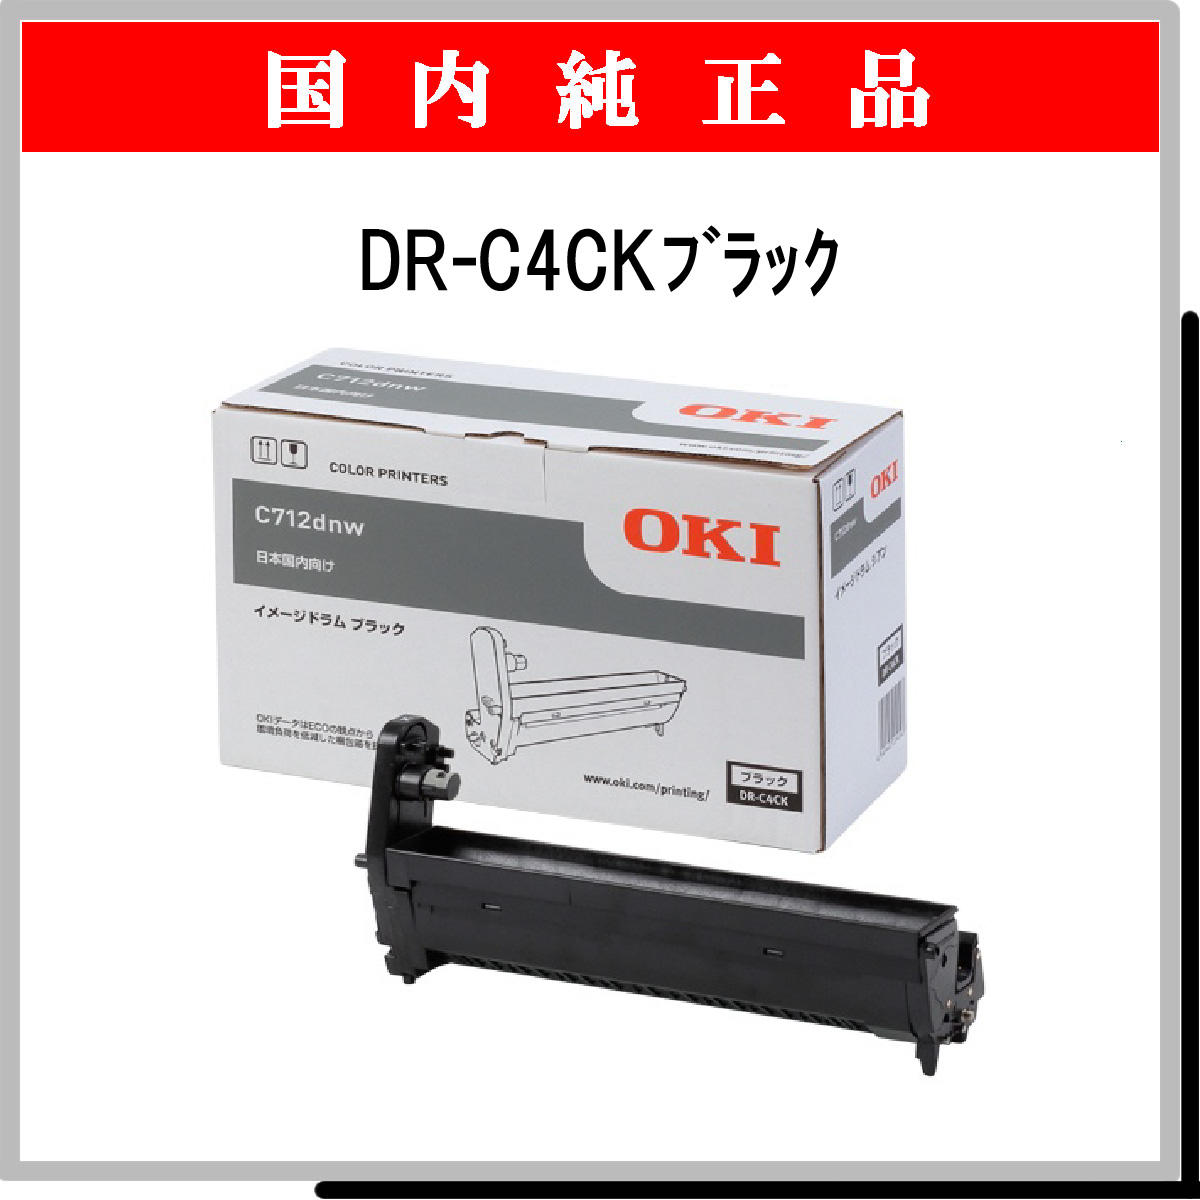 沖電気 OKI イメージドラム イエロー MC862dn-T   MC862dn   MC852dn ID-C3MY - 3